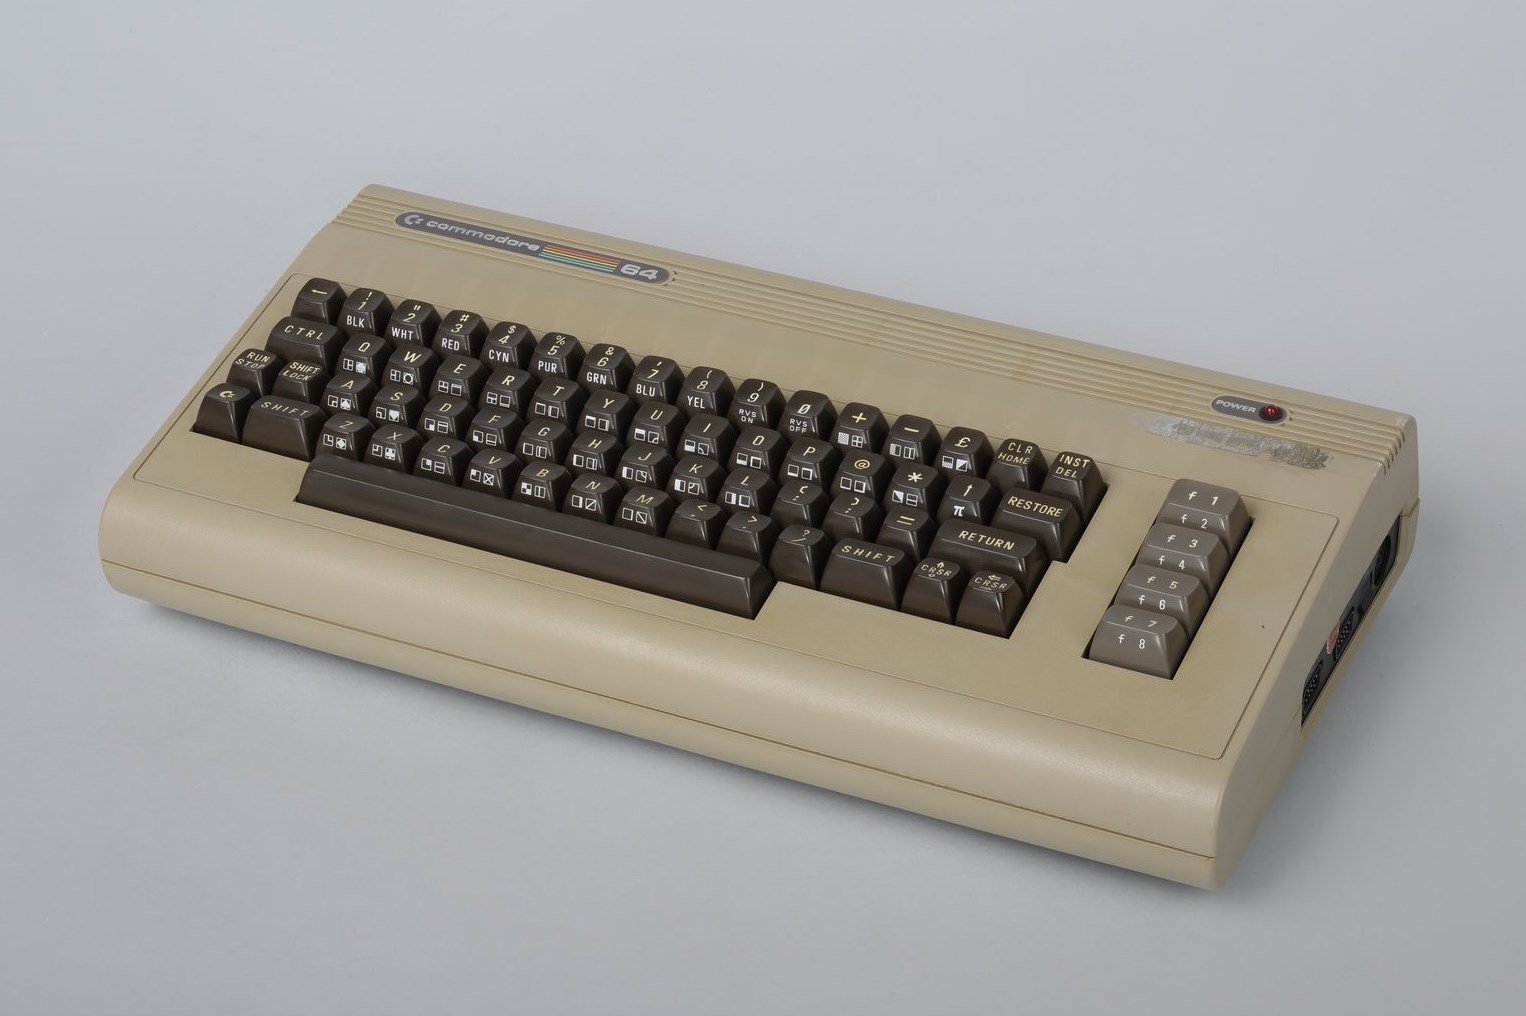 Accéder à la page "Commodore 64"